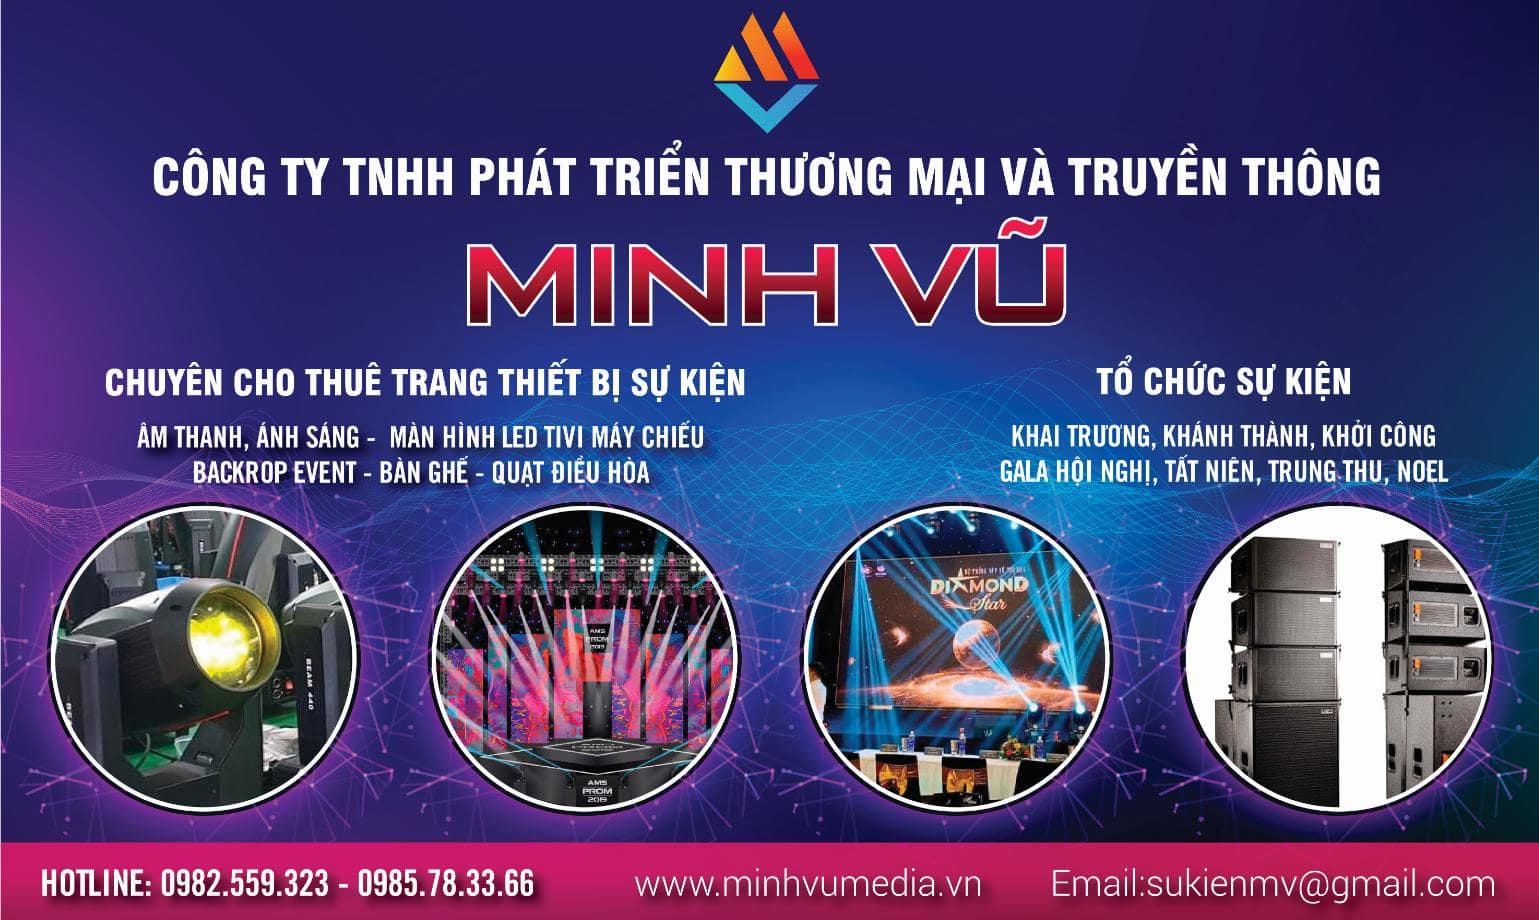 Minh Vũ media chuyên tổ chức sự kiện chuyên nghiệp tại Hà Nội